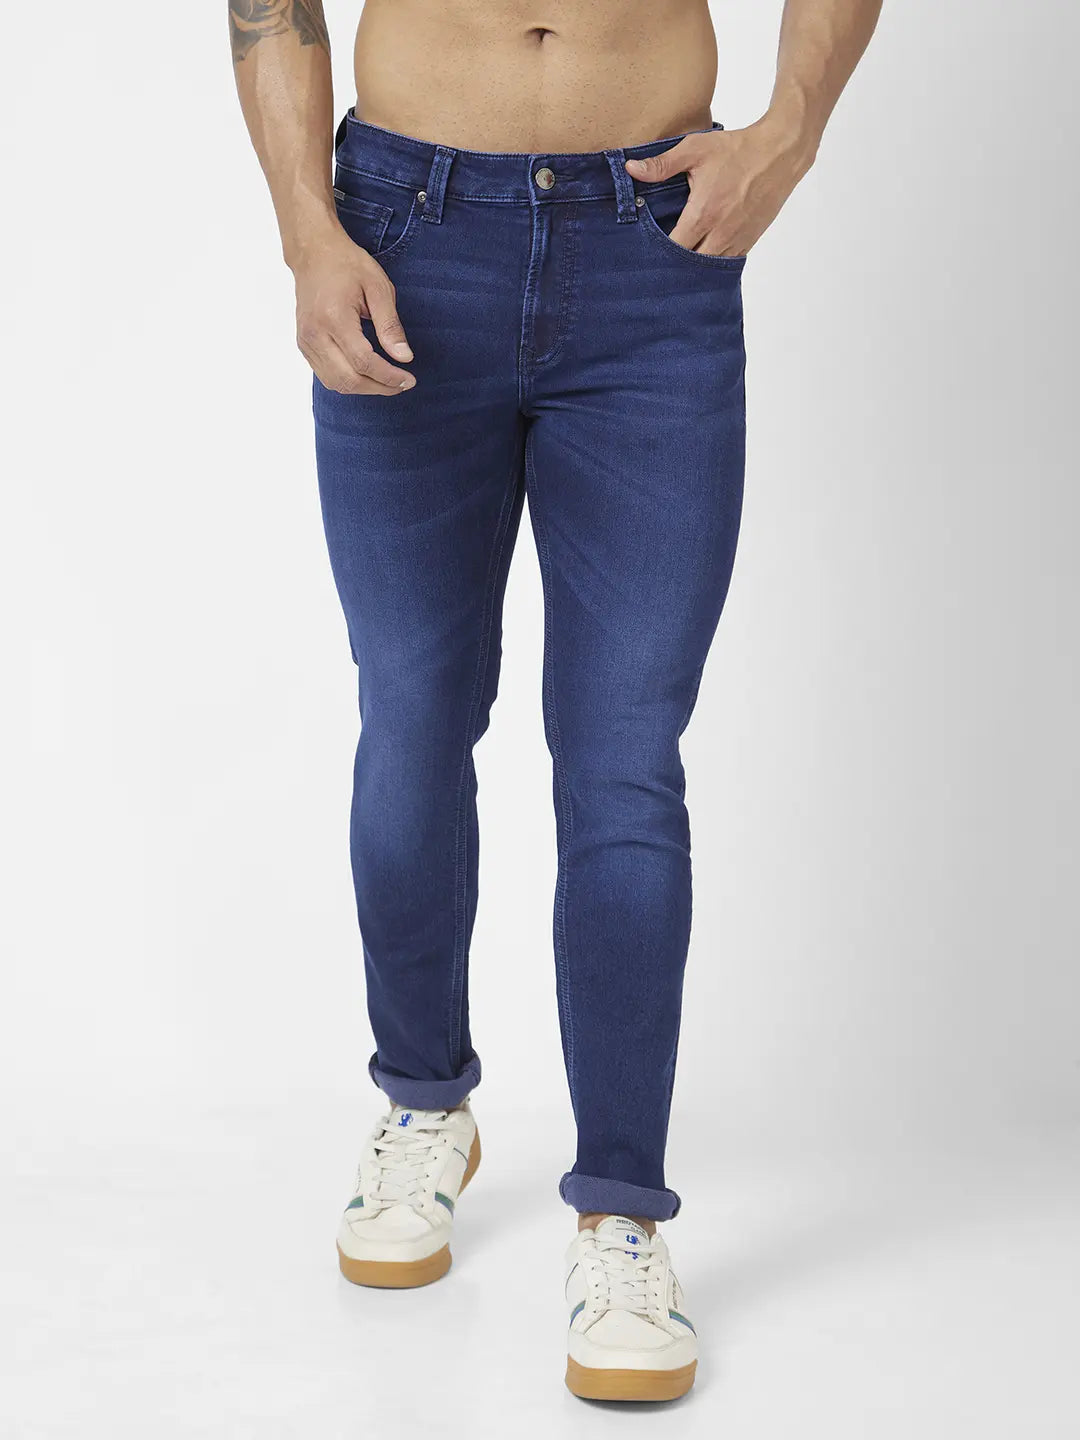 Plain Blue Spykar Mens Jeans, Slim Fit at Rs 650/piece in Kurnool | ID:  2851546569430